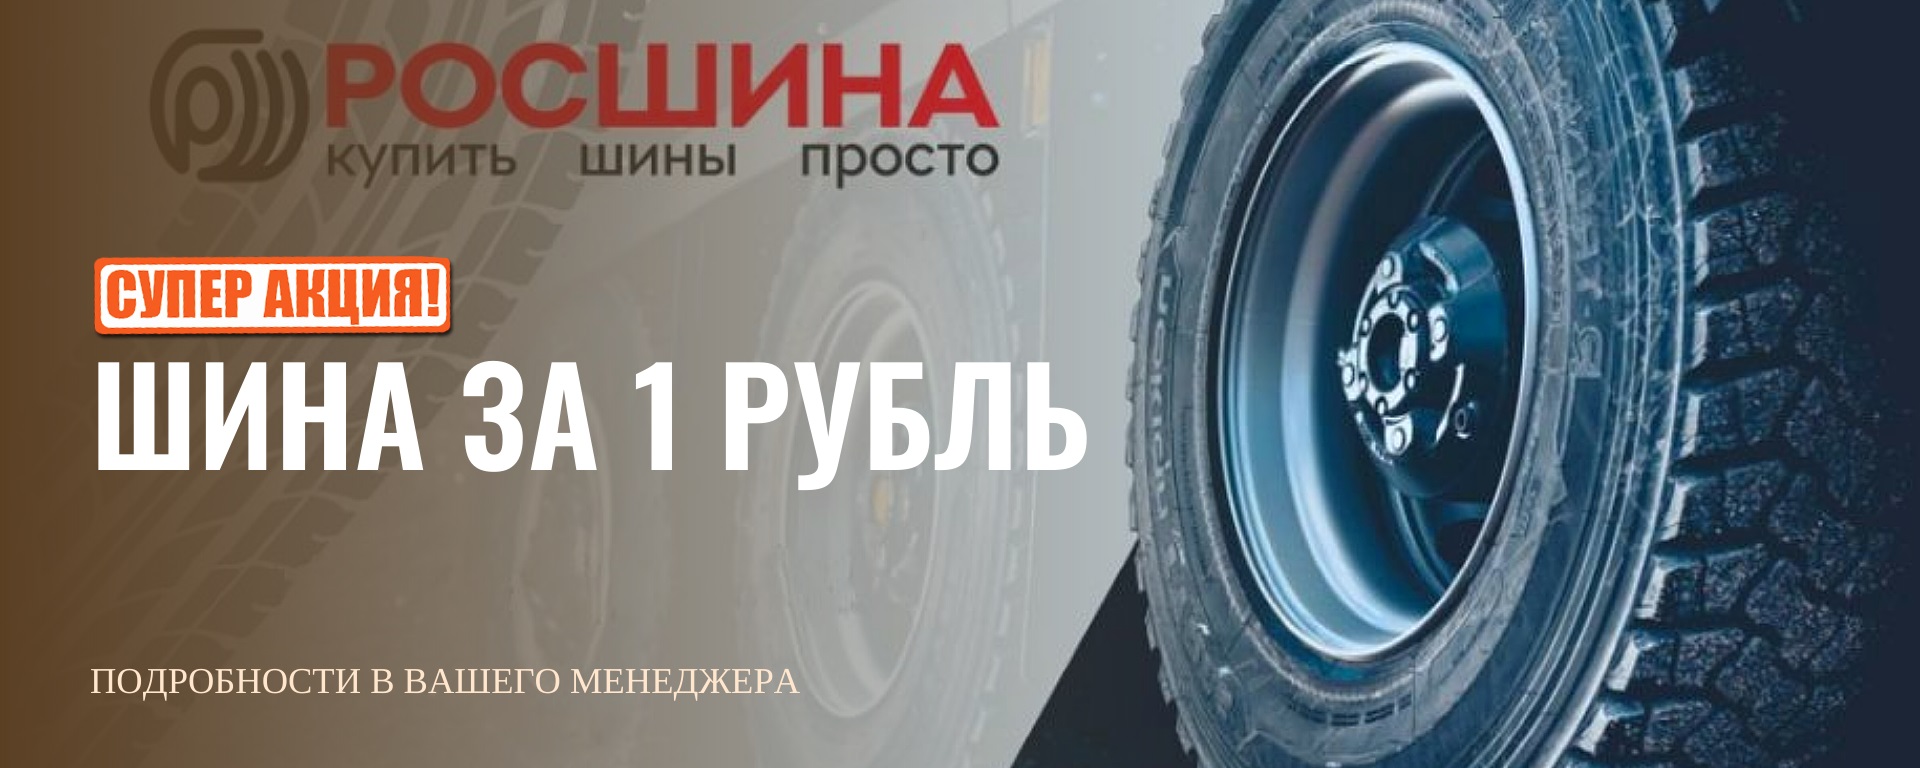 Купи шины и получи любой товар за 1 рубль